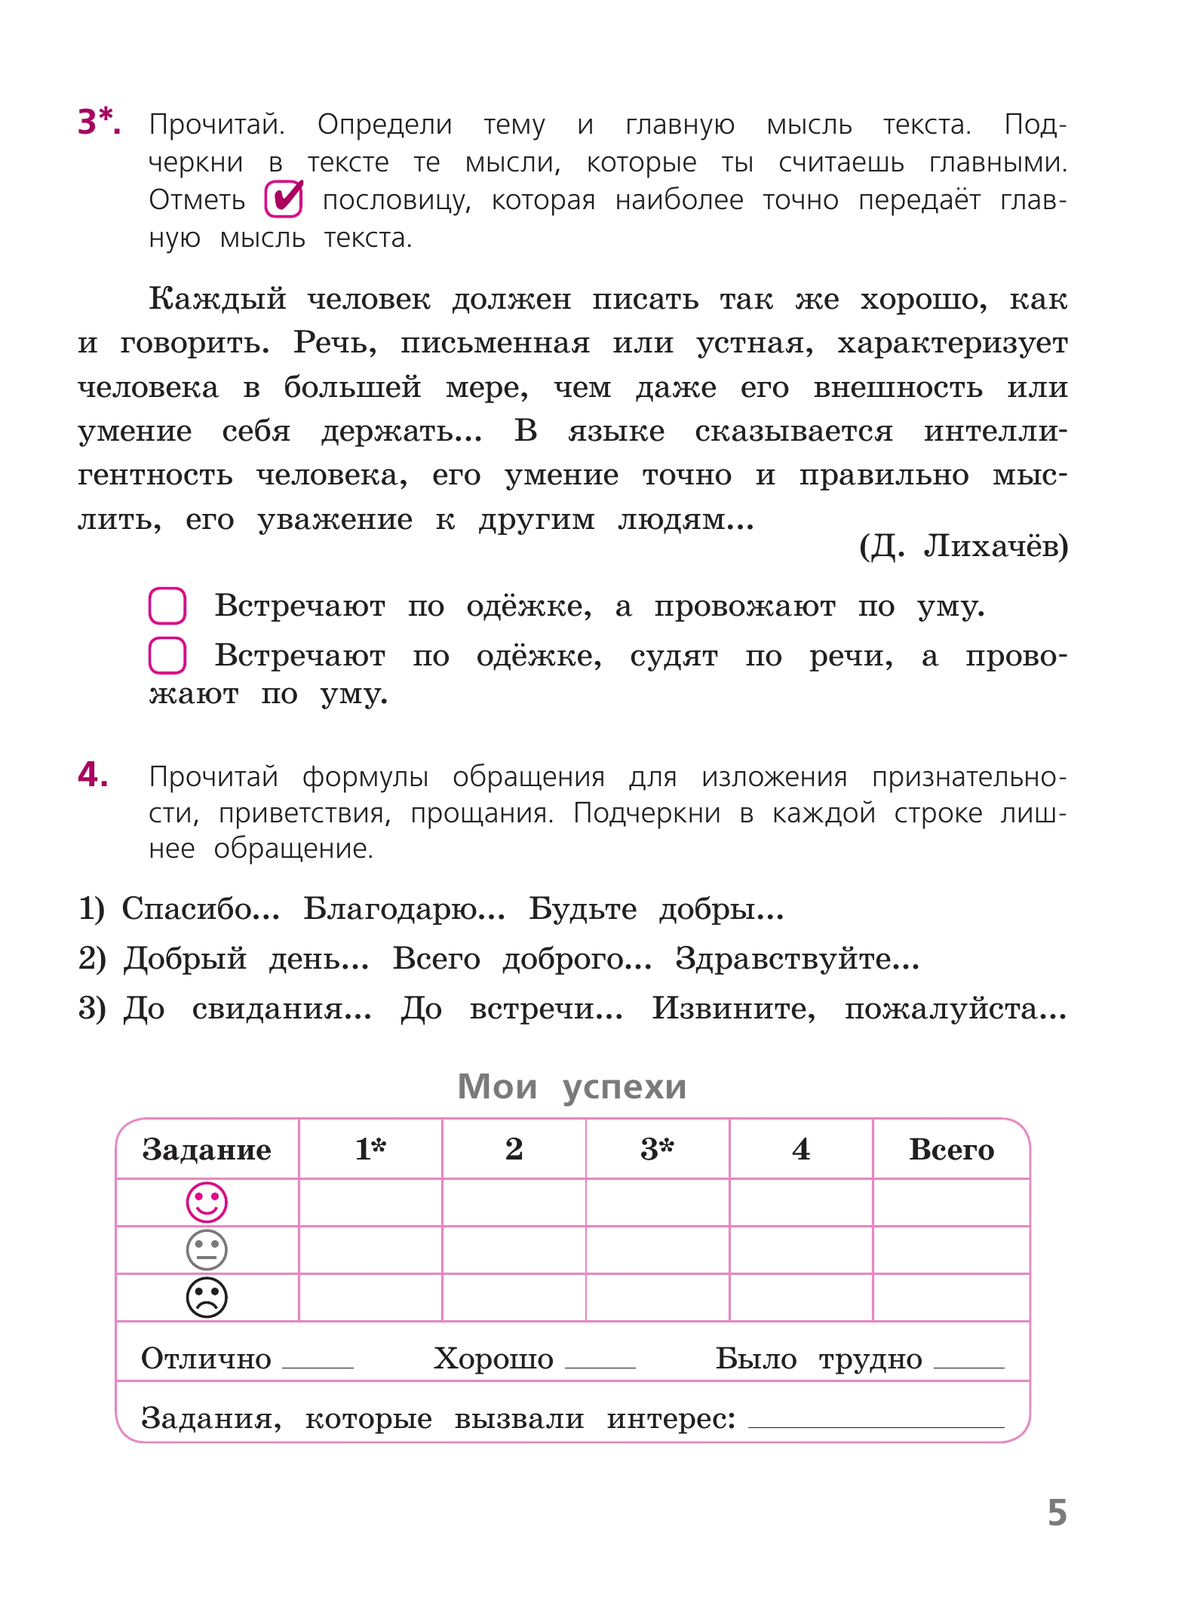 Русский язык. Тетрадь учебных достижений. 4 класс 7